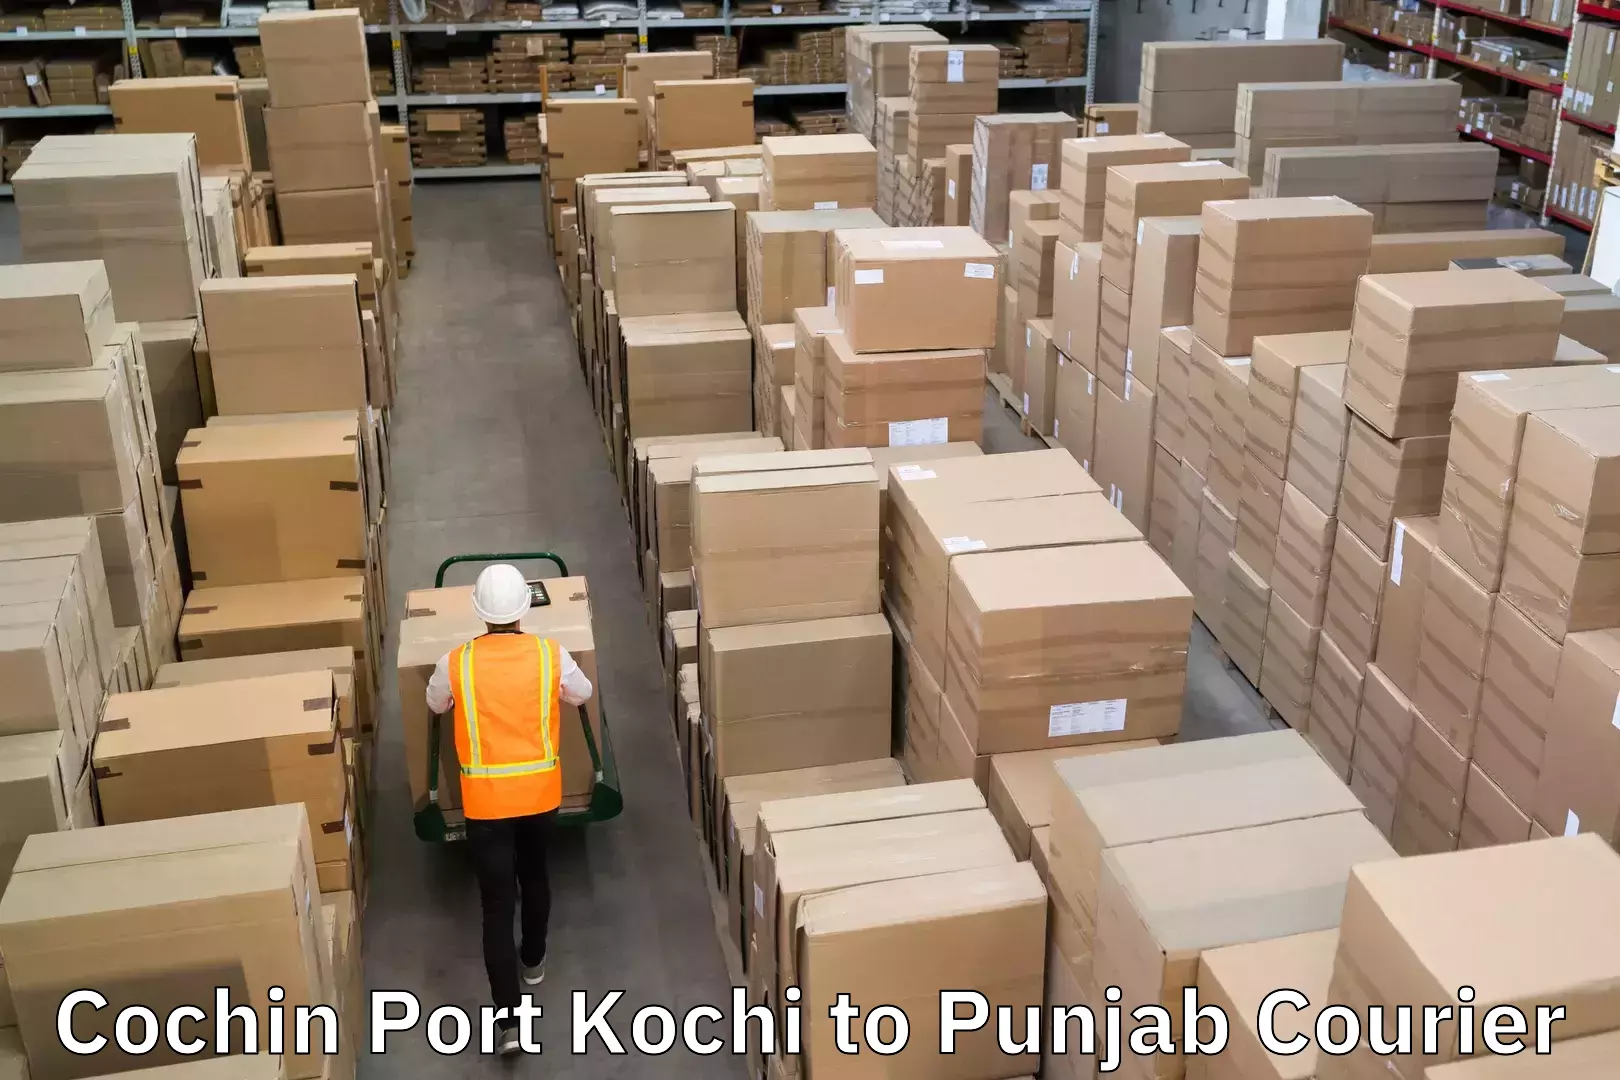 Advanced shipping technology Cochin Port Kochi to Punjab